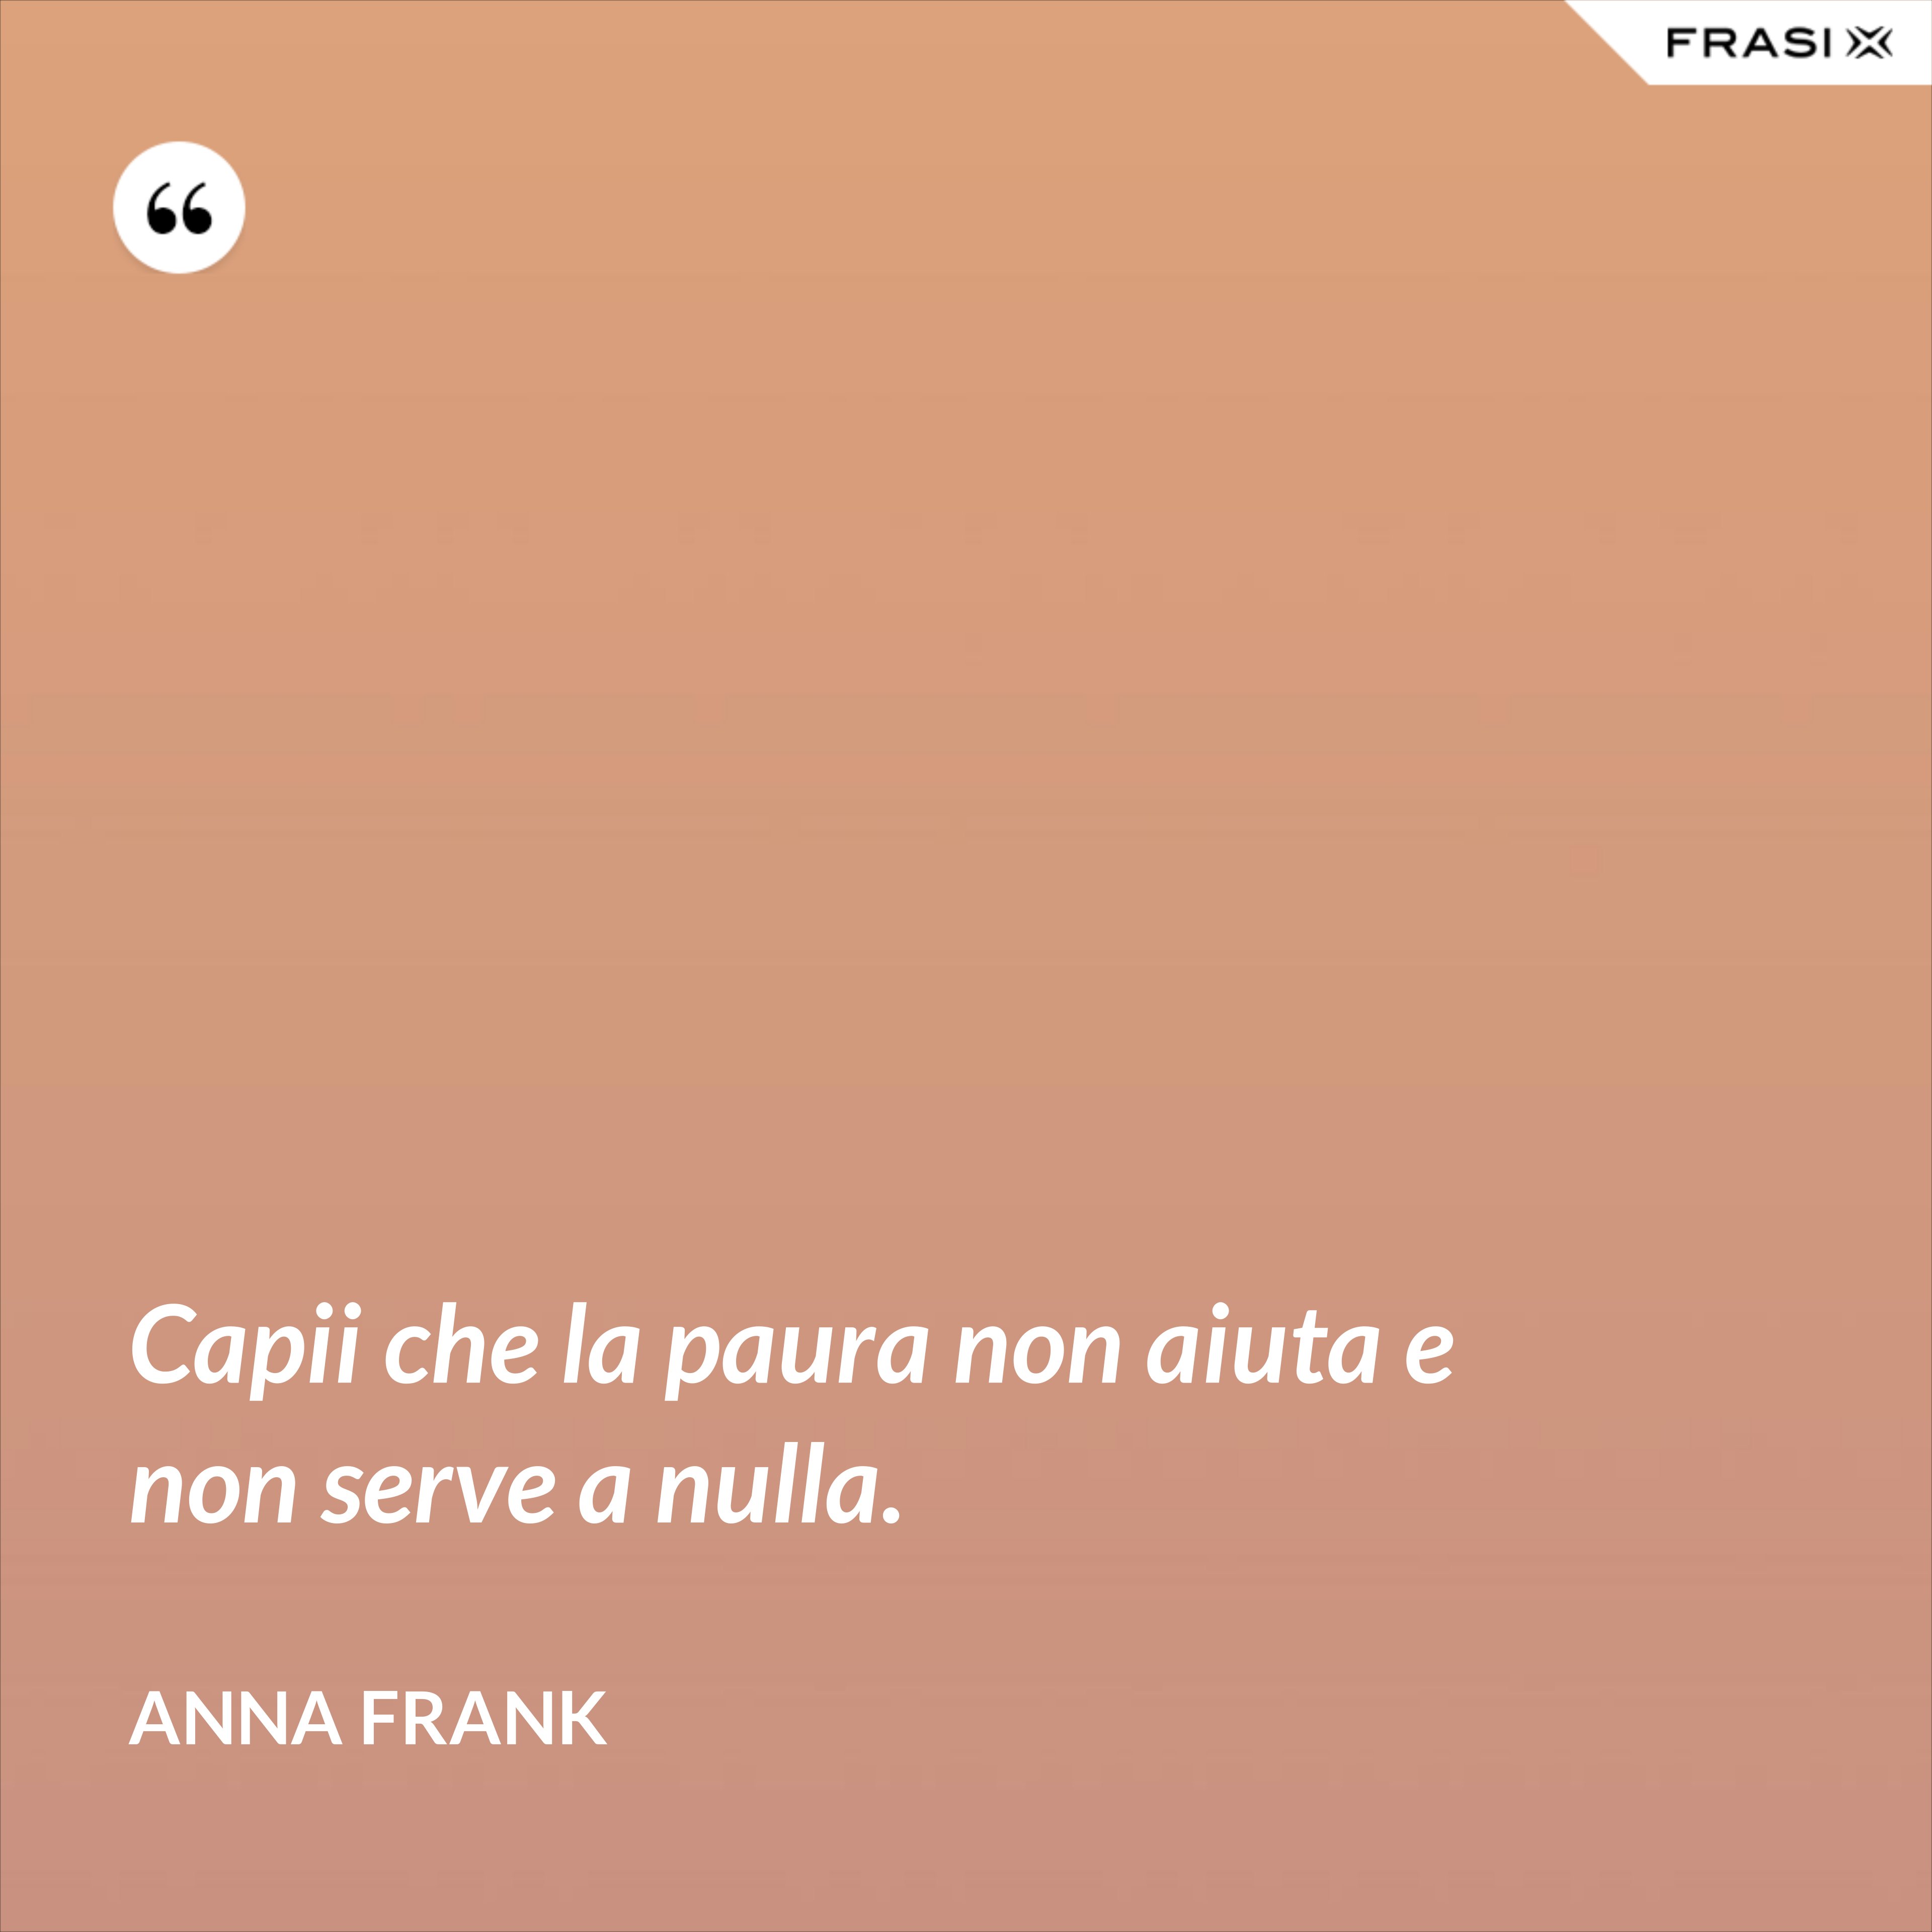 Capii che la paura non aiuta e non serve a nulla. - Anna Frank